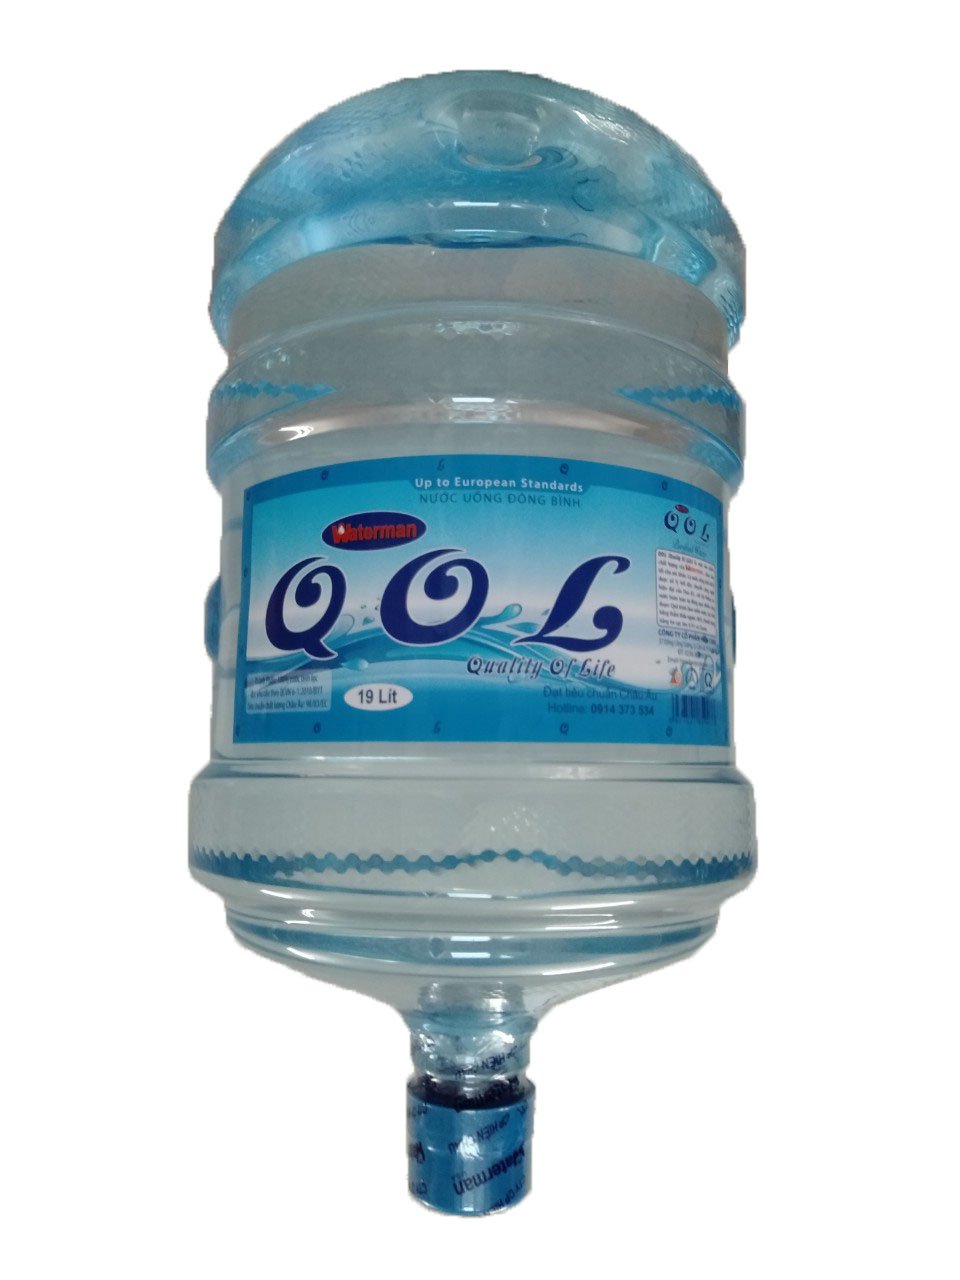 Bình QOL 19 lít không vòi - Nước Uống Waterman, QOL - Công ty CP Hiền Châu